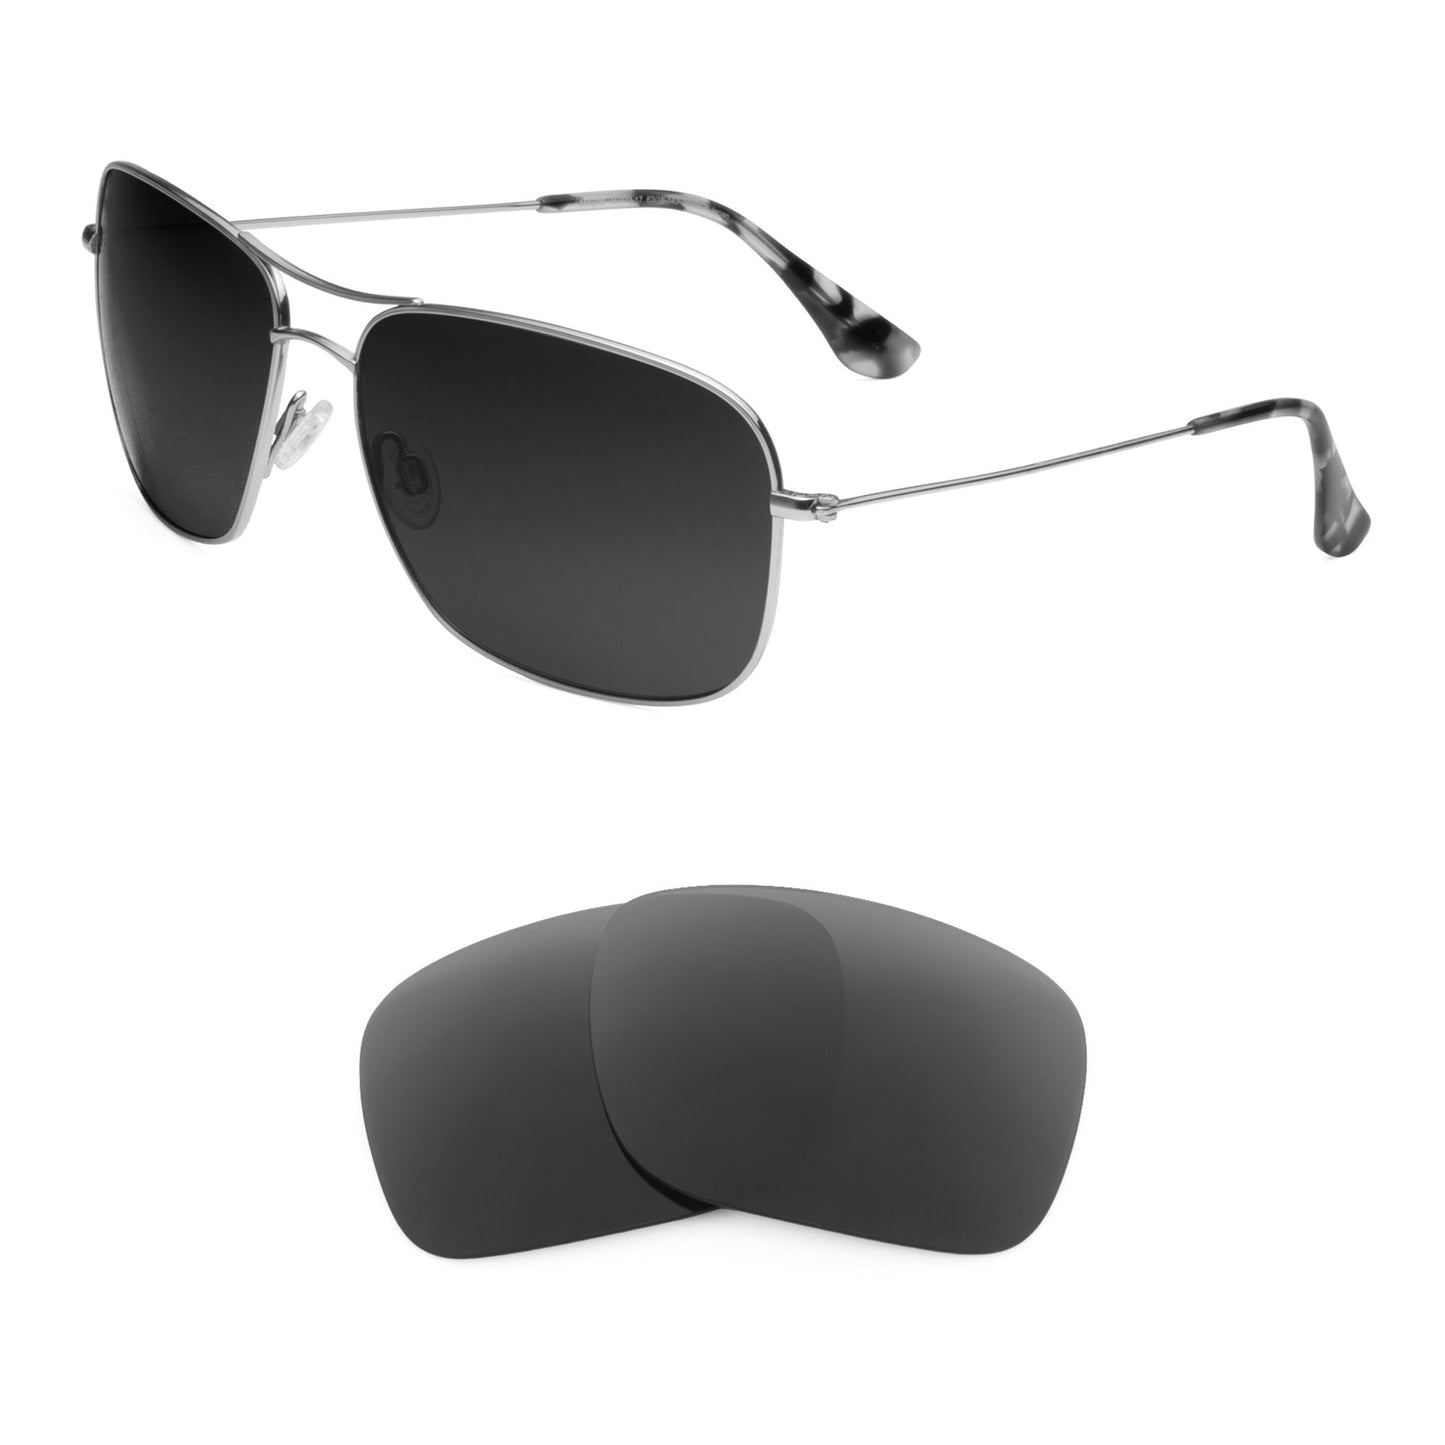 Maui Jim Breezeway MJ773 sunglasses with replacement lenses